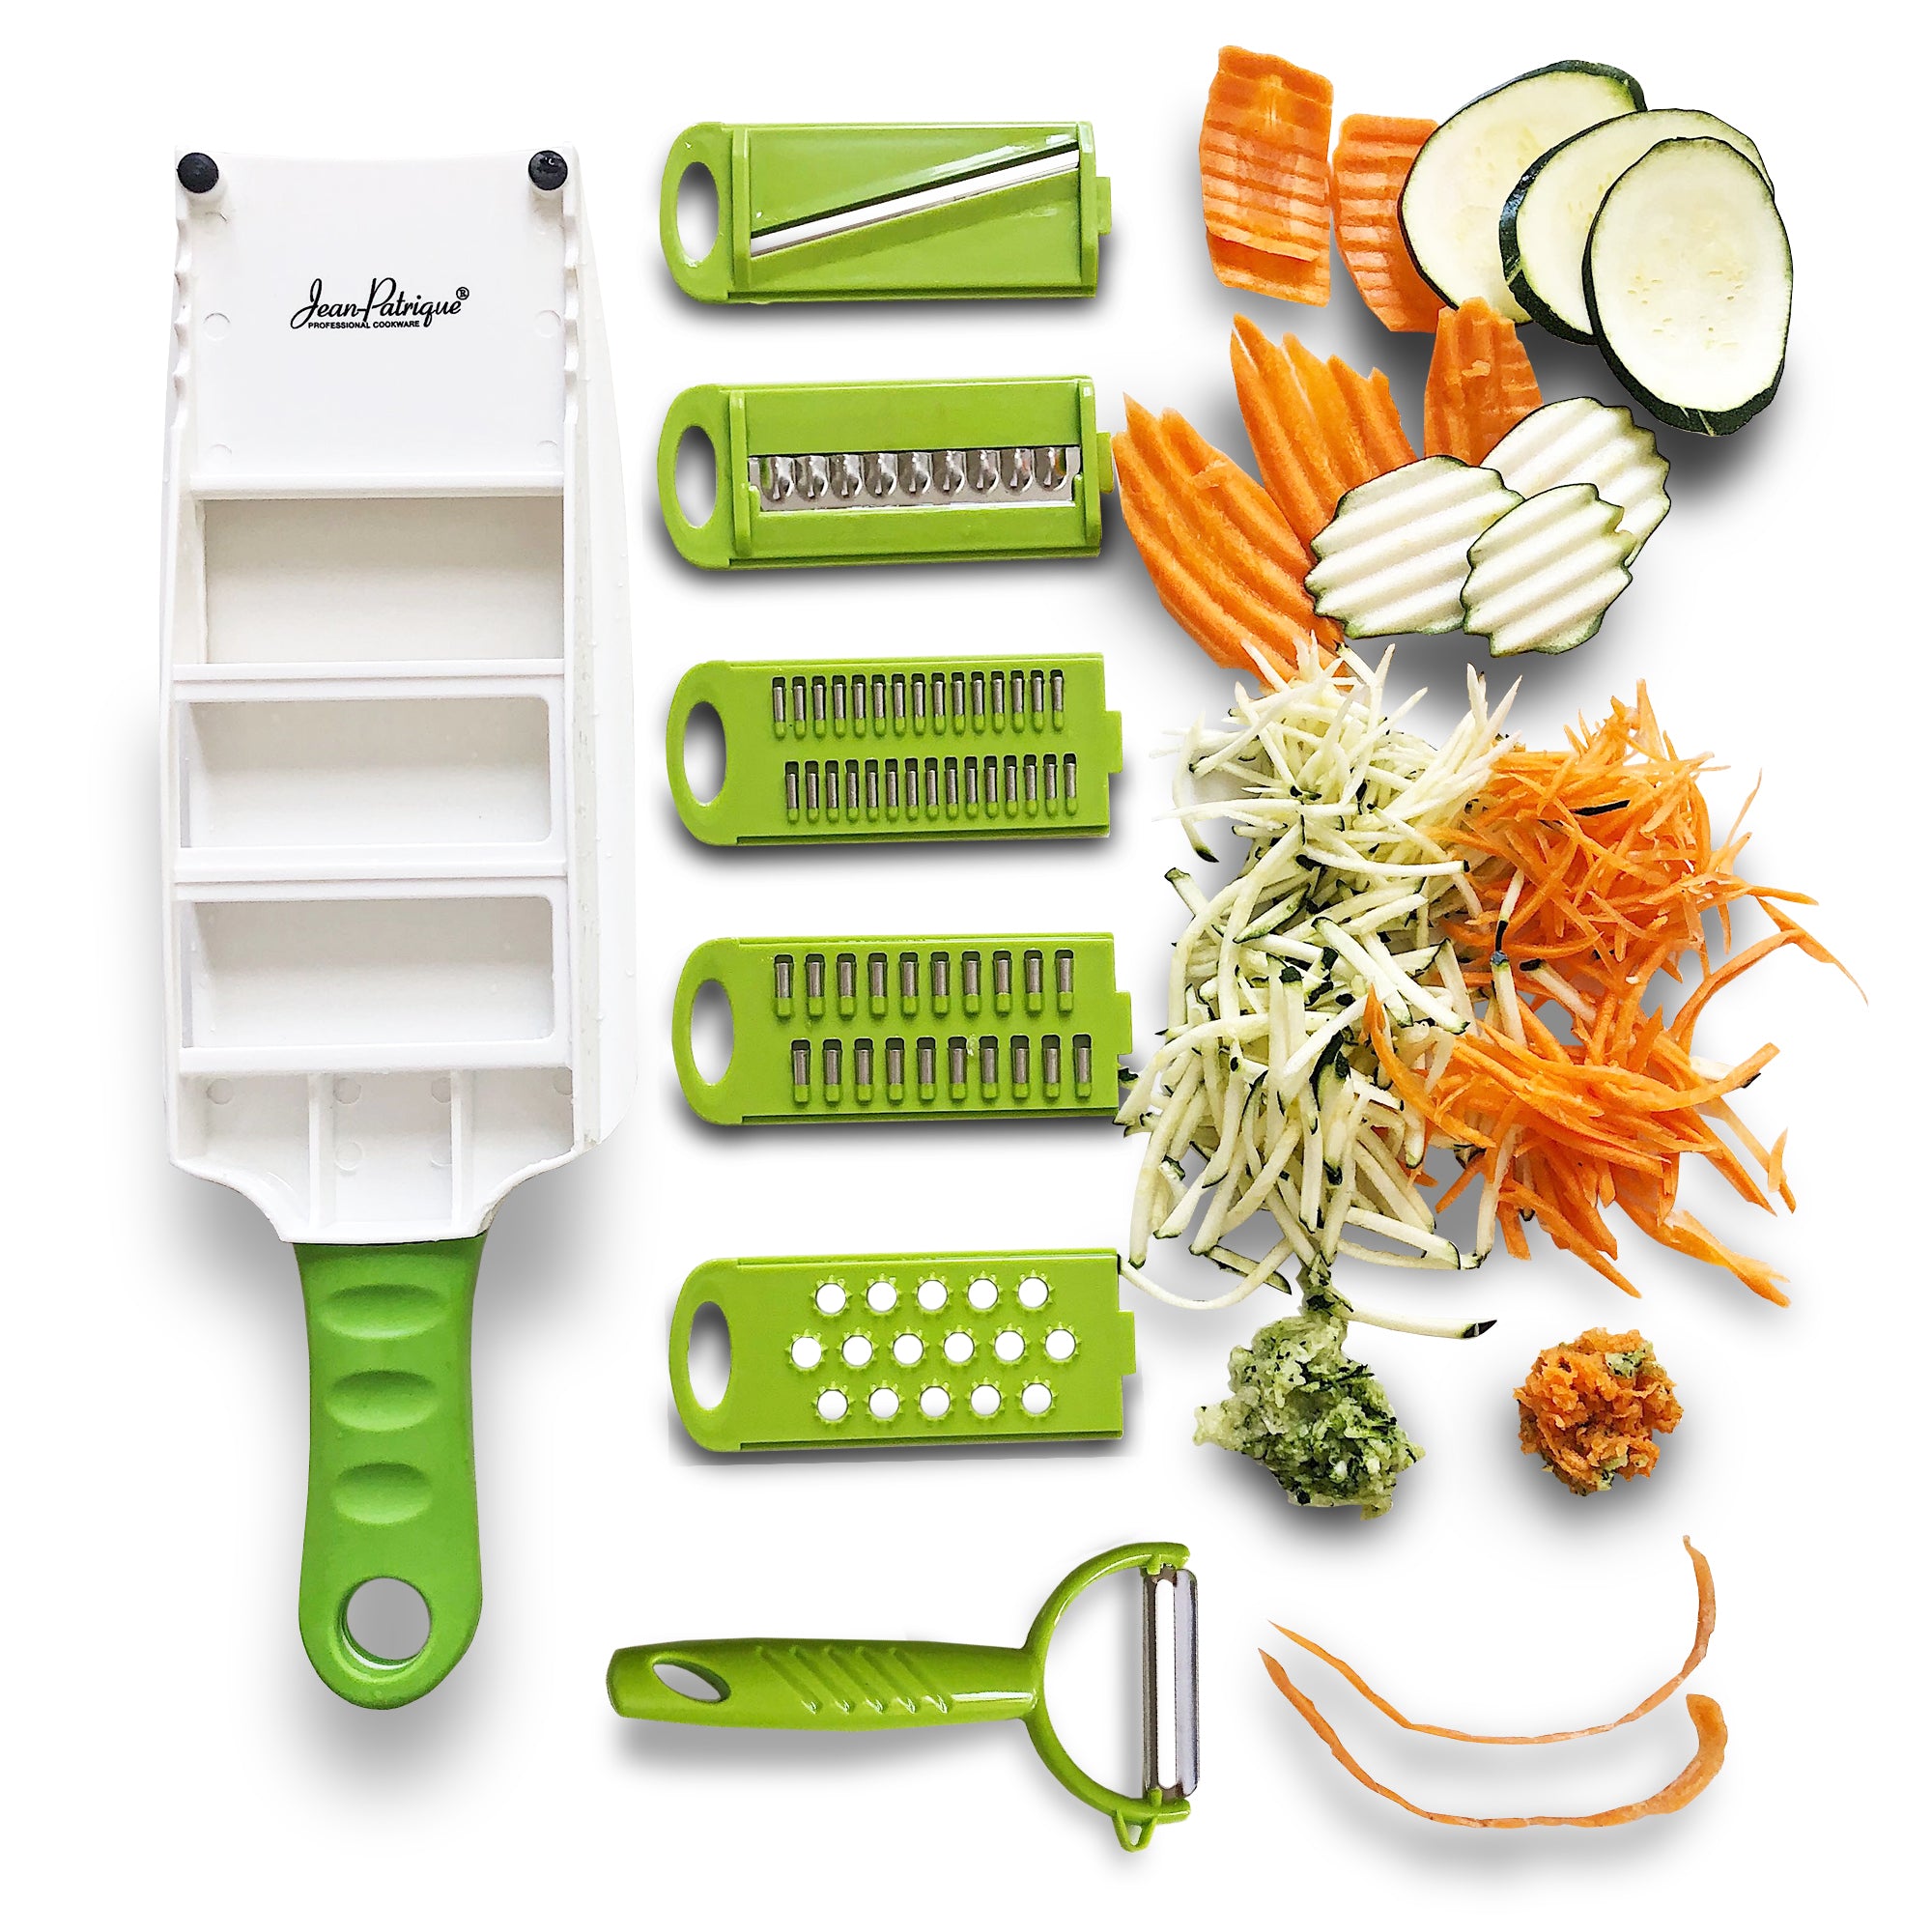 handheld vegetable slicer